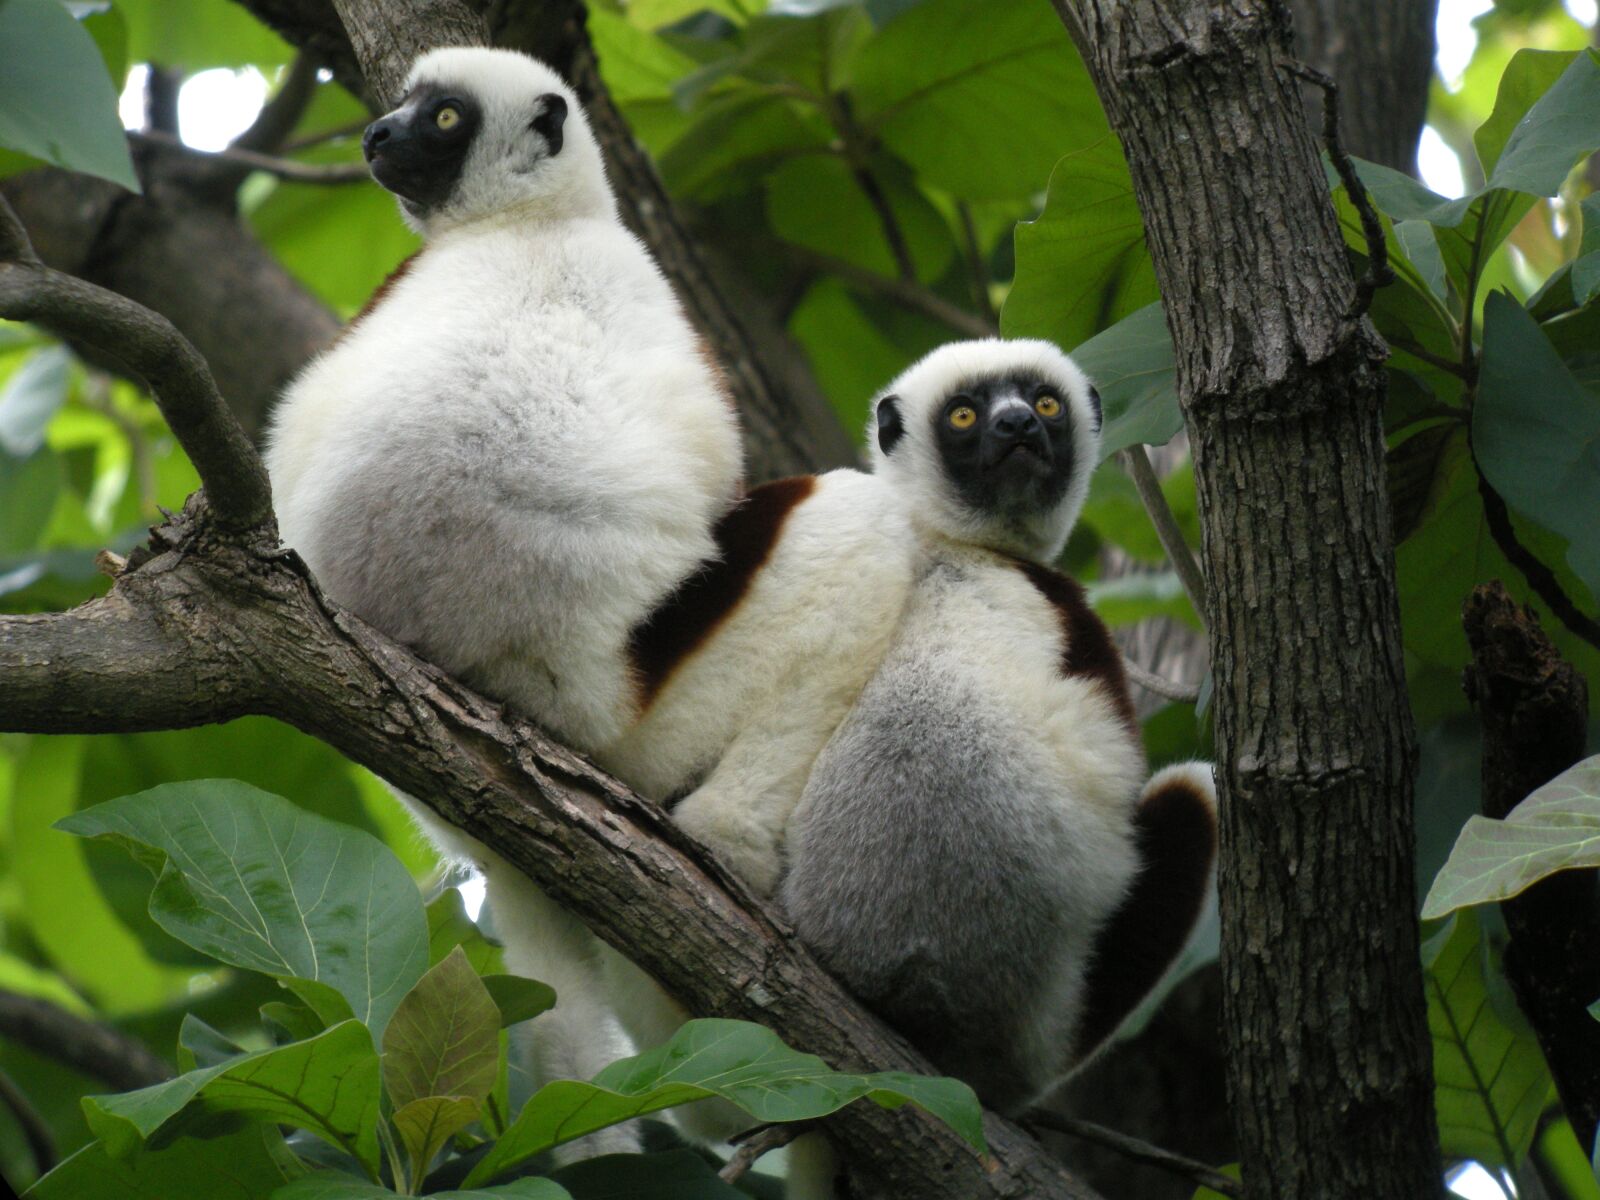 Nikon COOLPIX P5100 sample photo. Madagascar, lemurs, nature photography